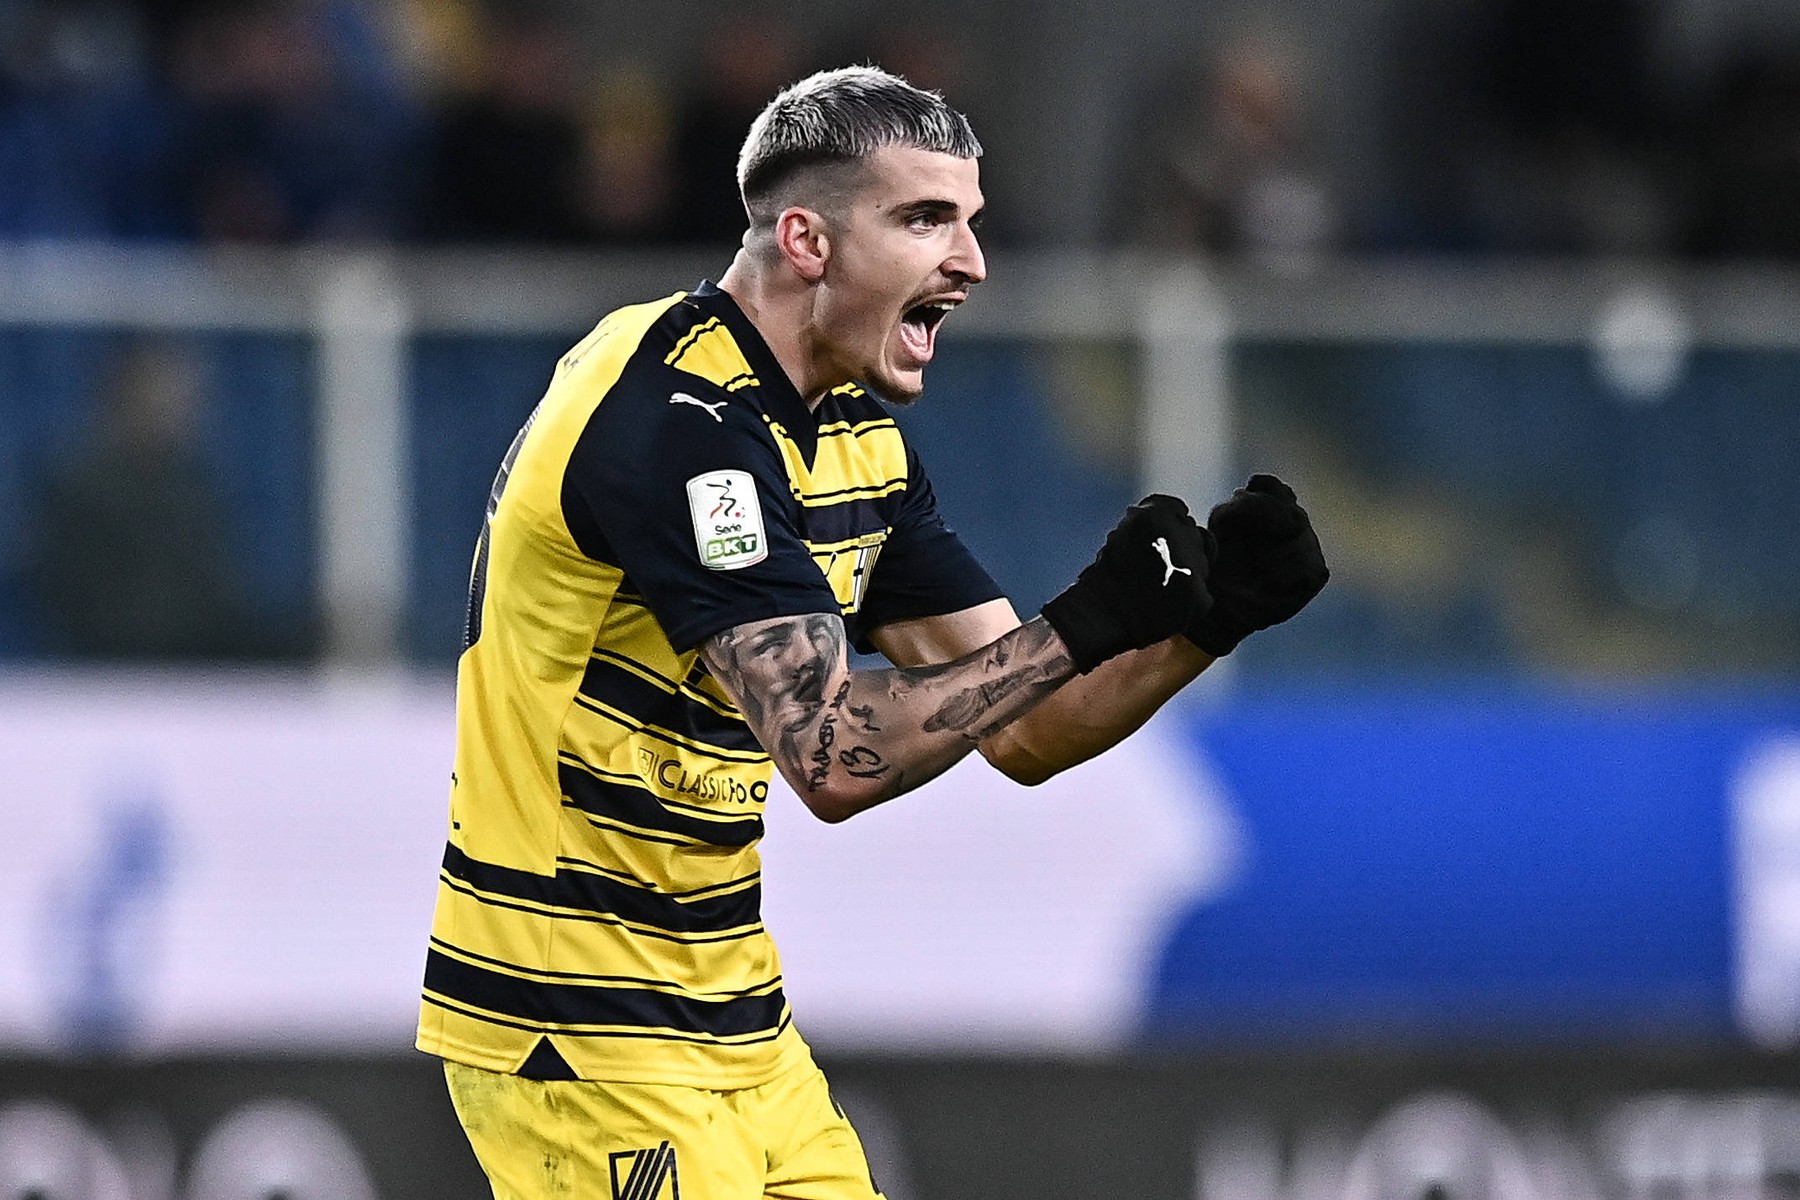 Parma continuă marșul către Serie A! Valentin Mihăilă a înscris după ce a fost convocat la națională